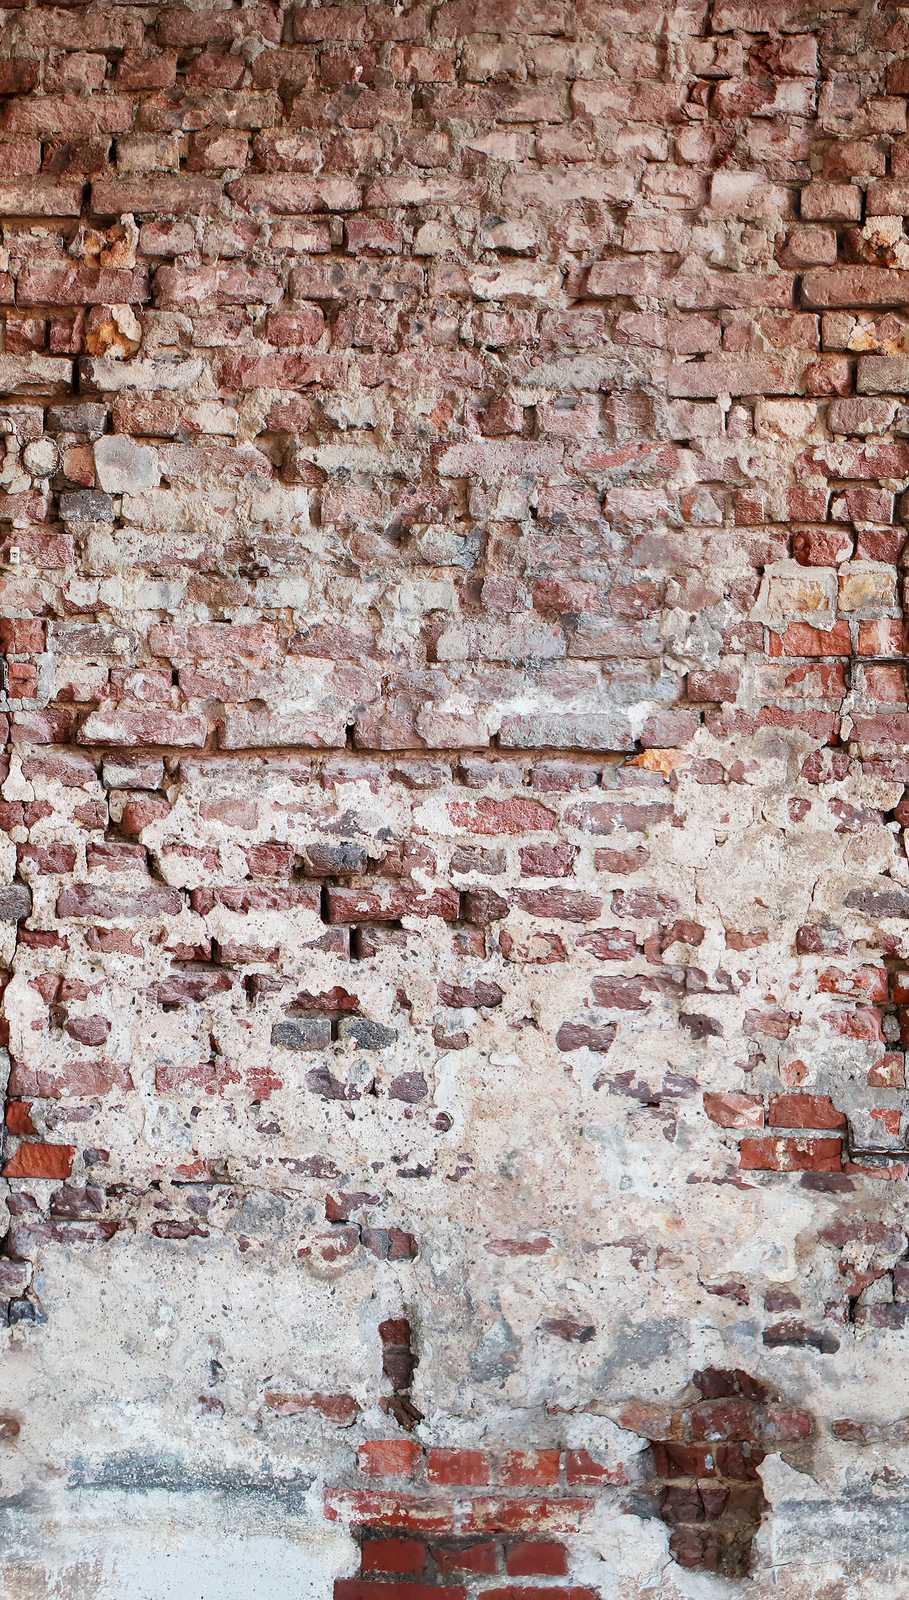             Tapeten Neuheit | Motivtapete rustikale Backsteinmauer im Used Look
        